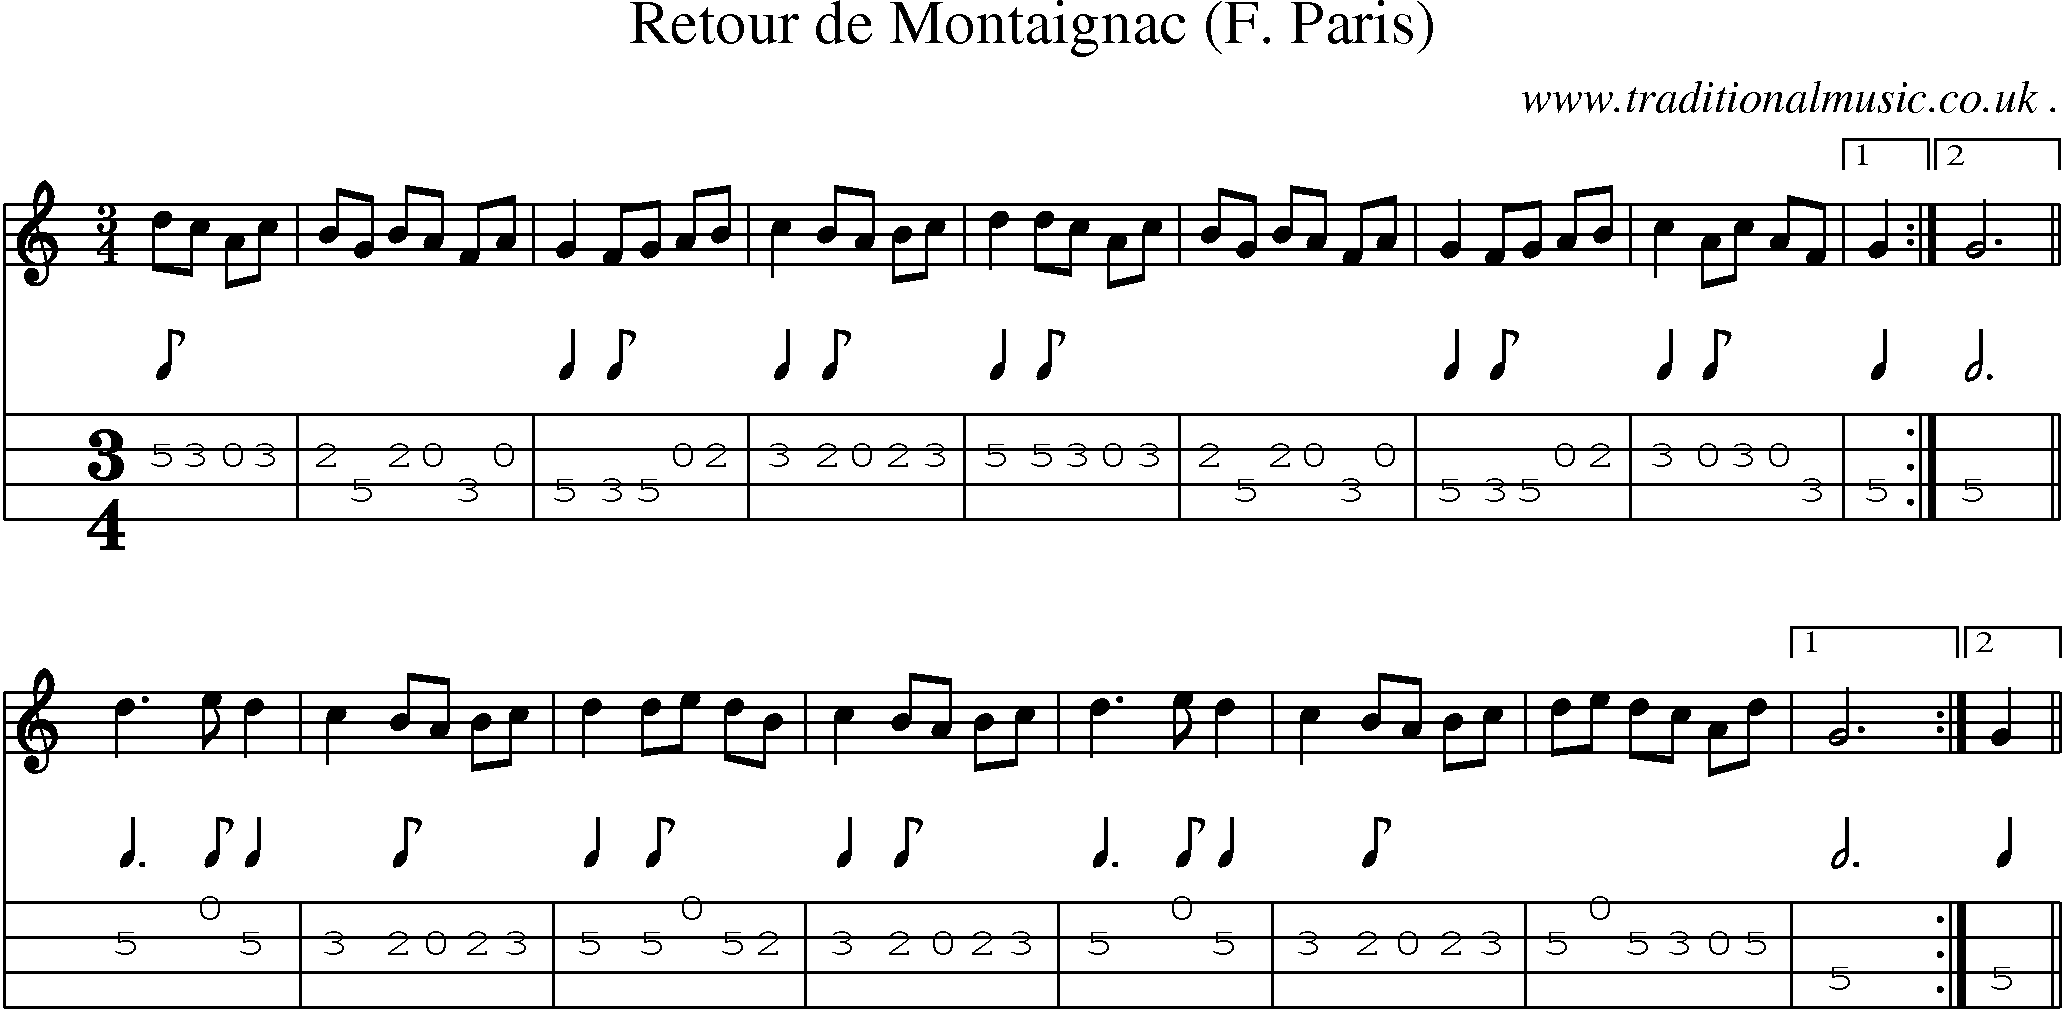 Sheet-Music and Mandolin Tabs for Retour De Montaignac (f Paris)